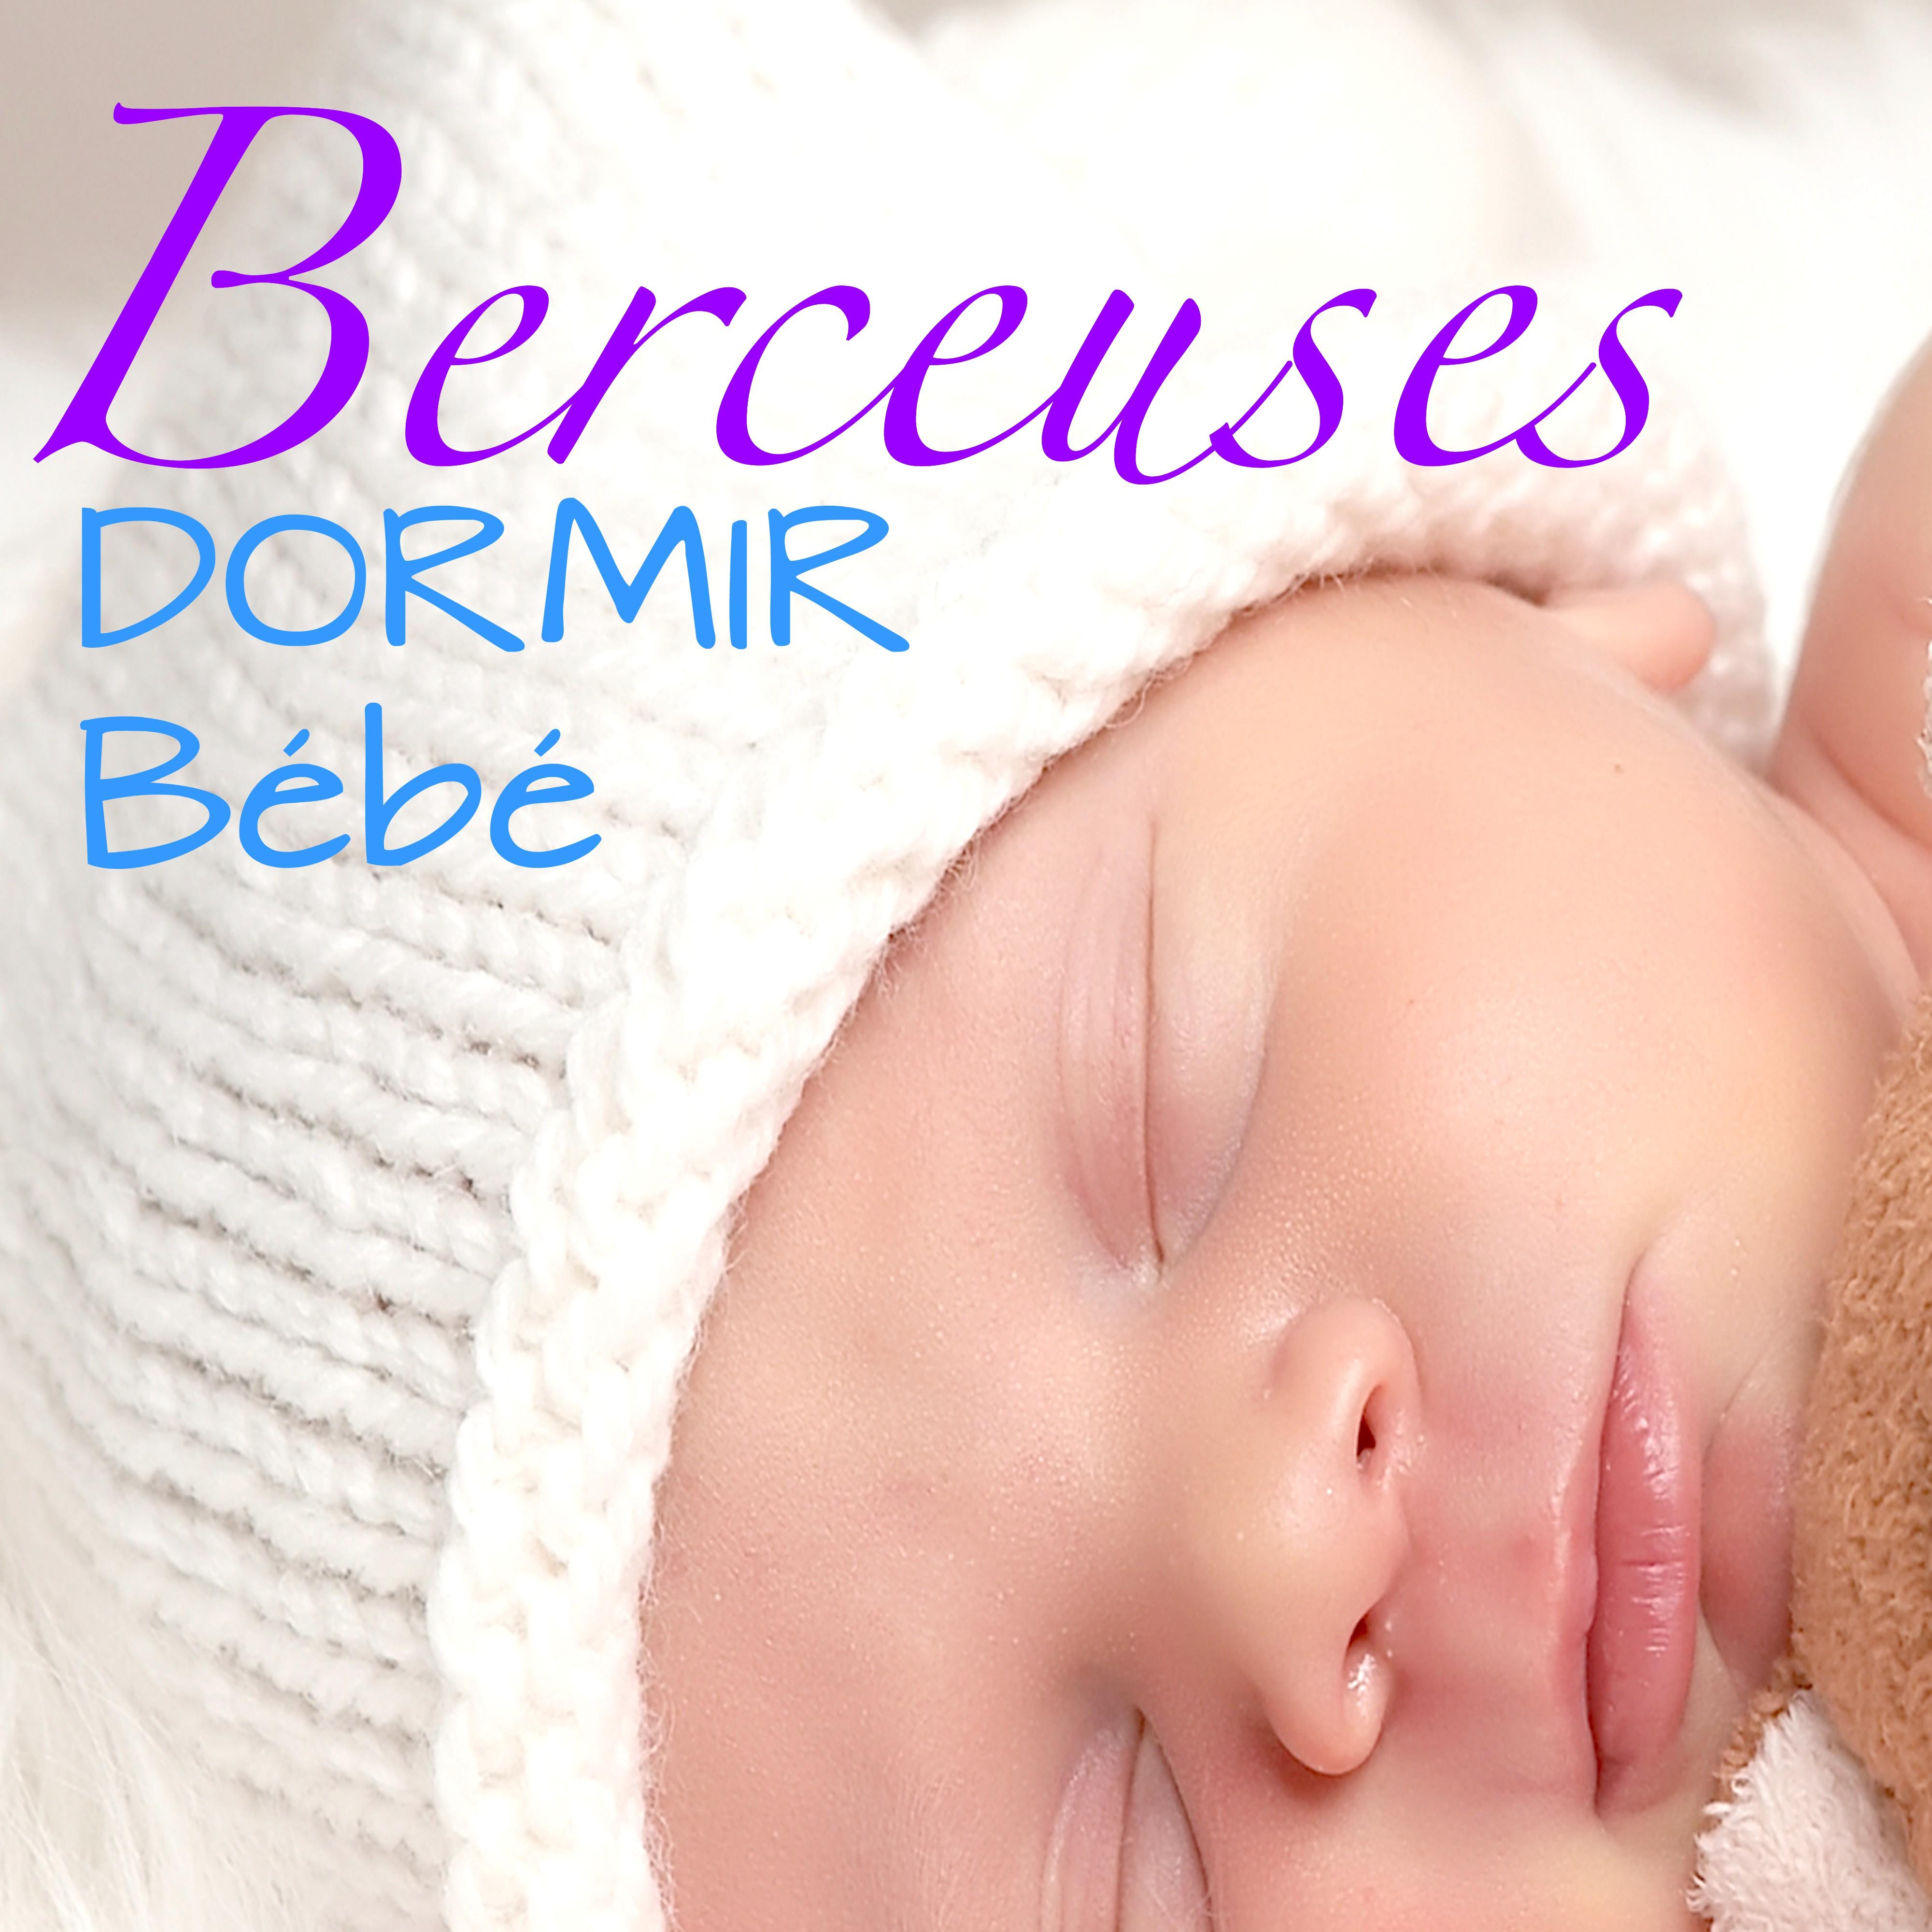 Berceuses – Dormir Bébé: Morceaux Relaxante et Serein pour Endormir votre Bébé, Musicothérapie pour Enfants